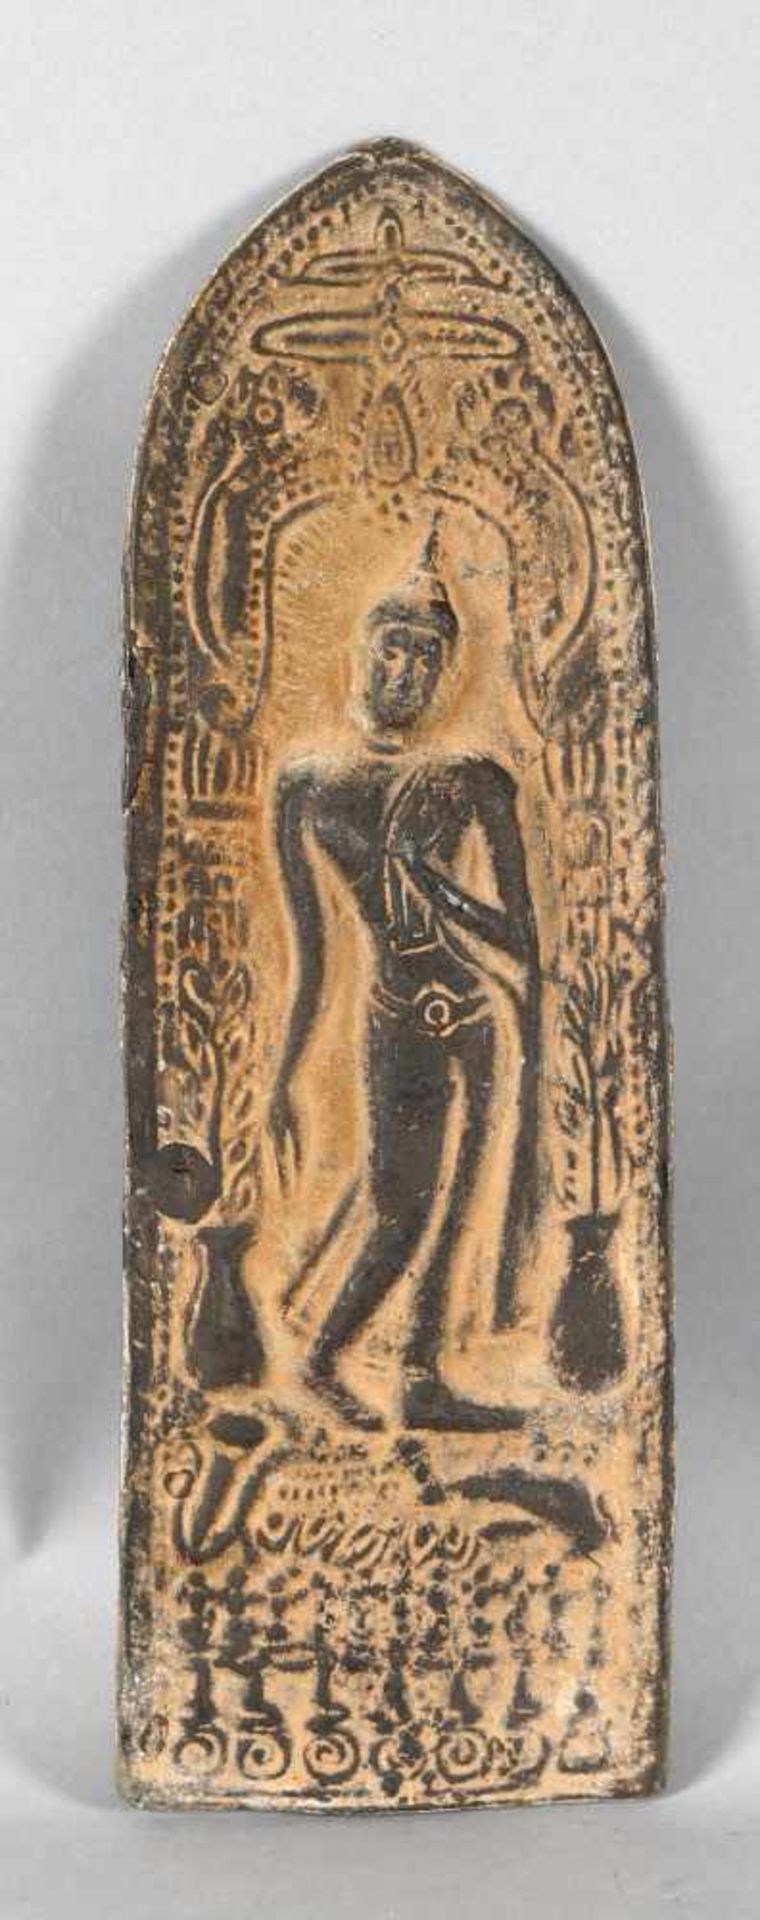 Reliefierte Platte aus Bronze, Thailand, 19./20. Jh.das Zentrum der Darstellung bildet der